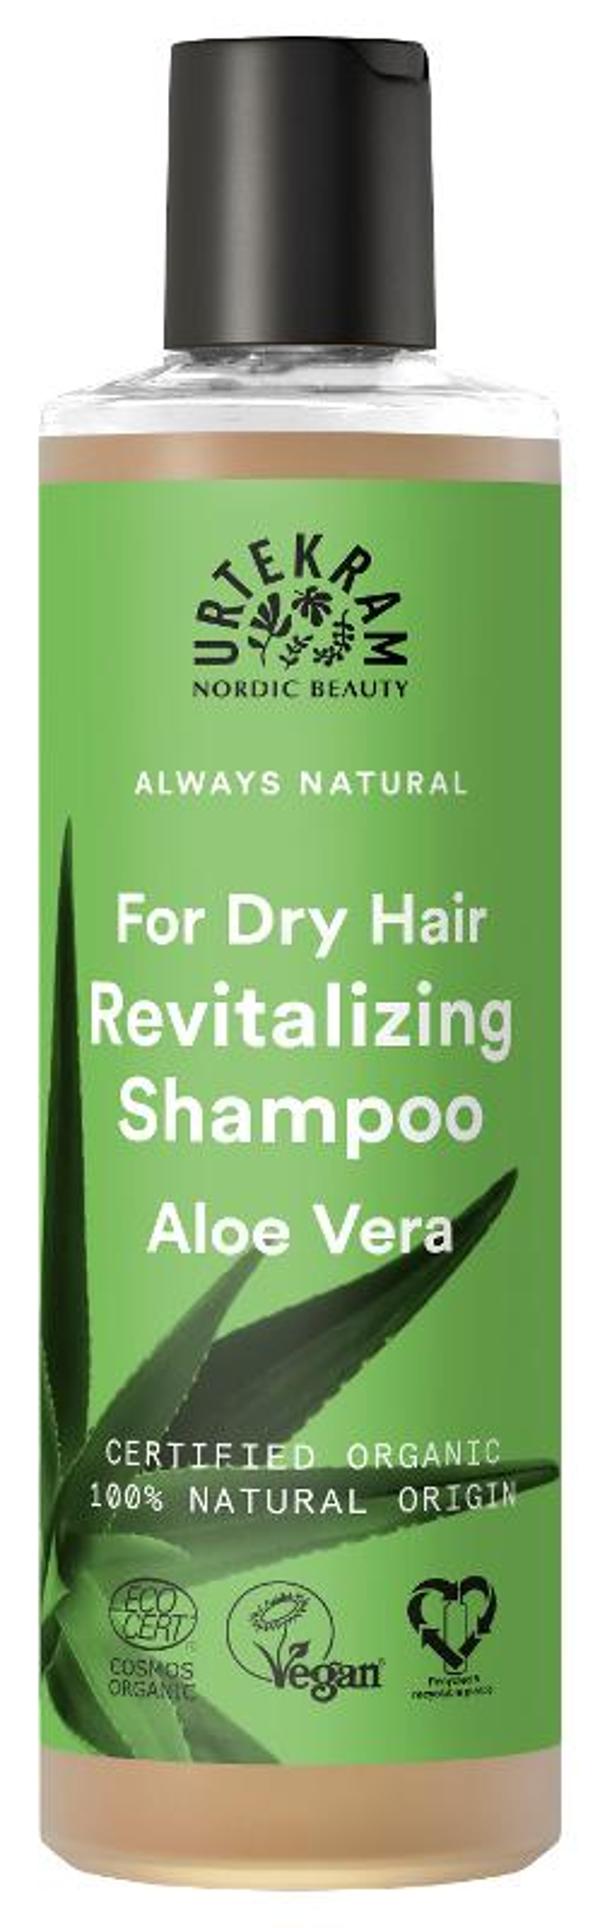 Produktfoto zu Shampoo revitalizing  Aloe Vera